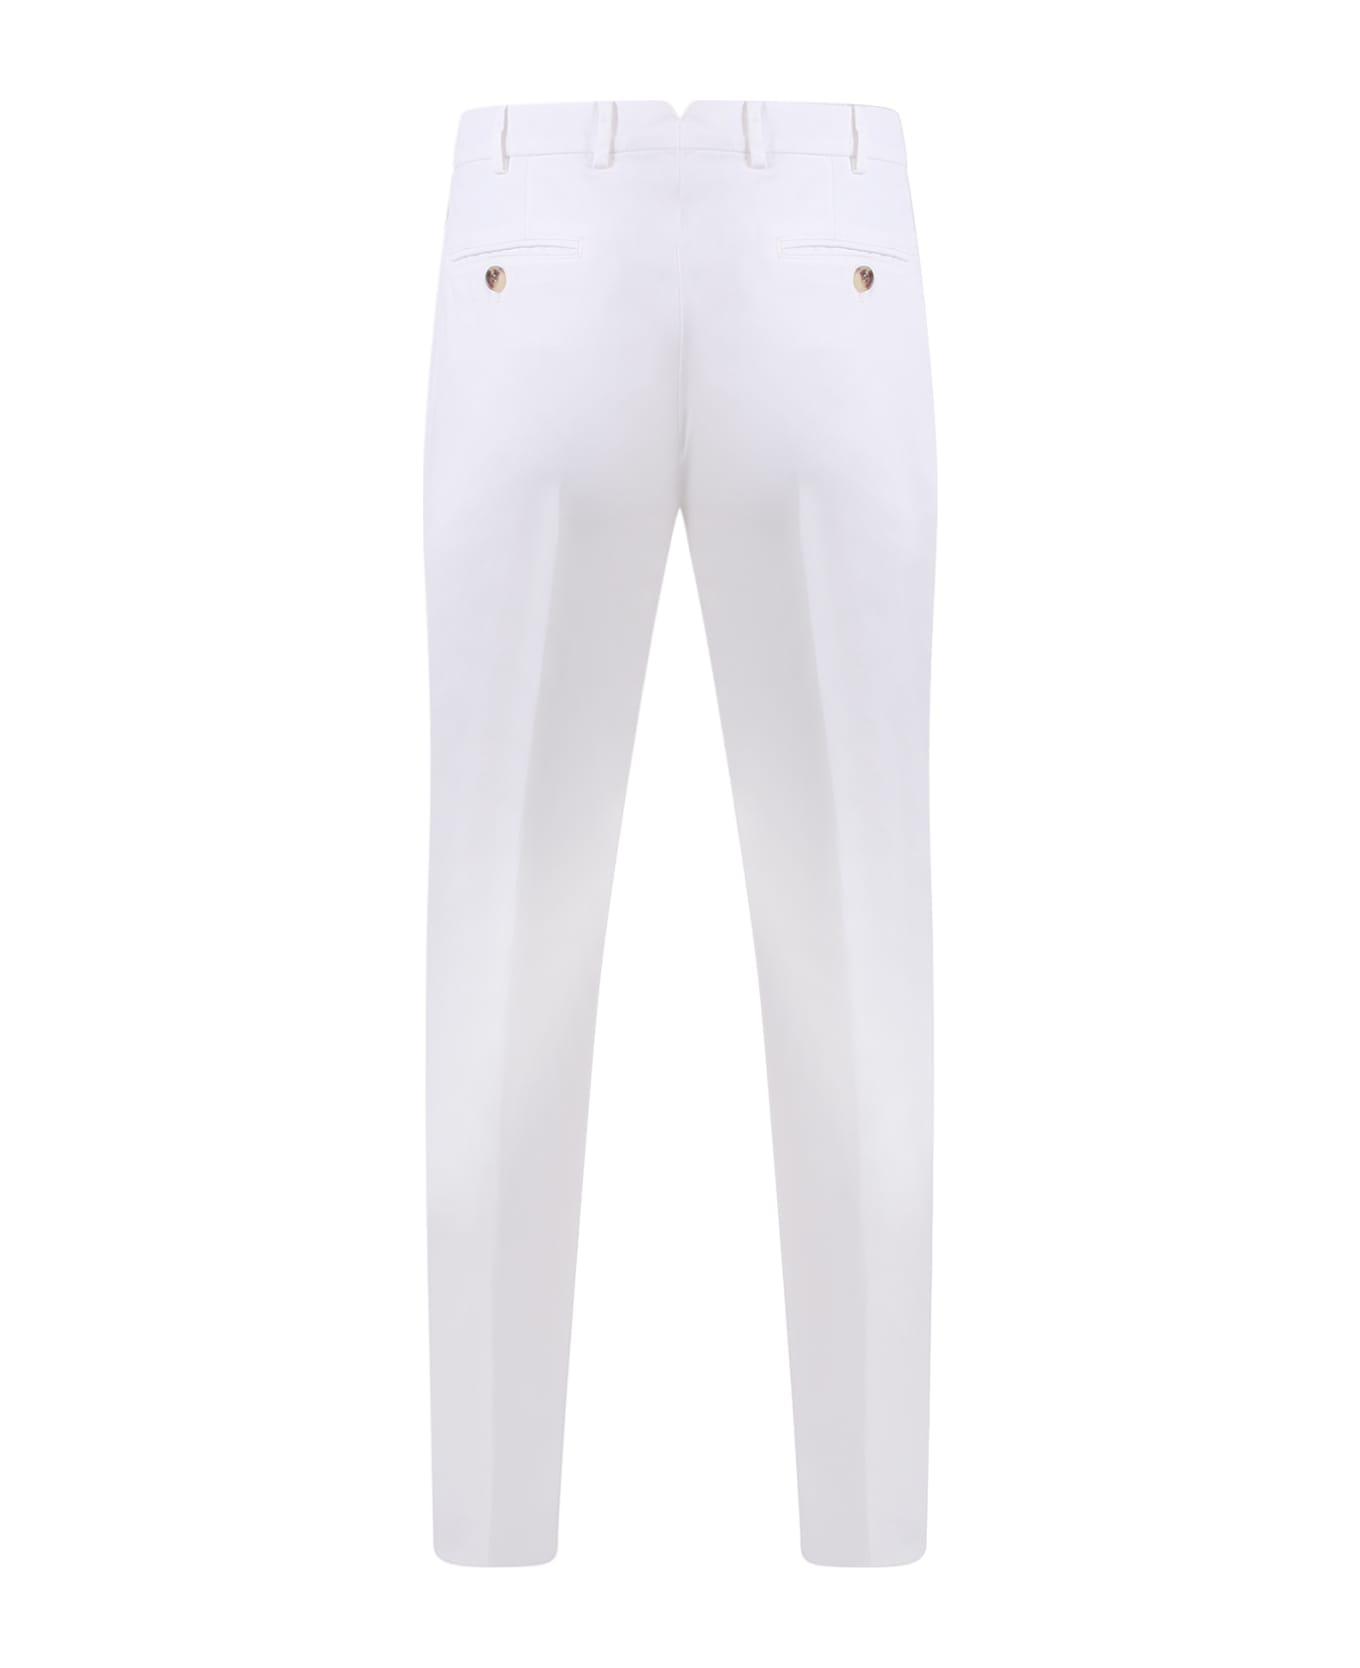 Brunello Cucinelli Italian Fit Cotton Trouser - White